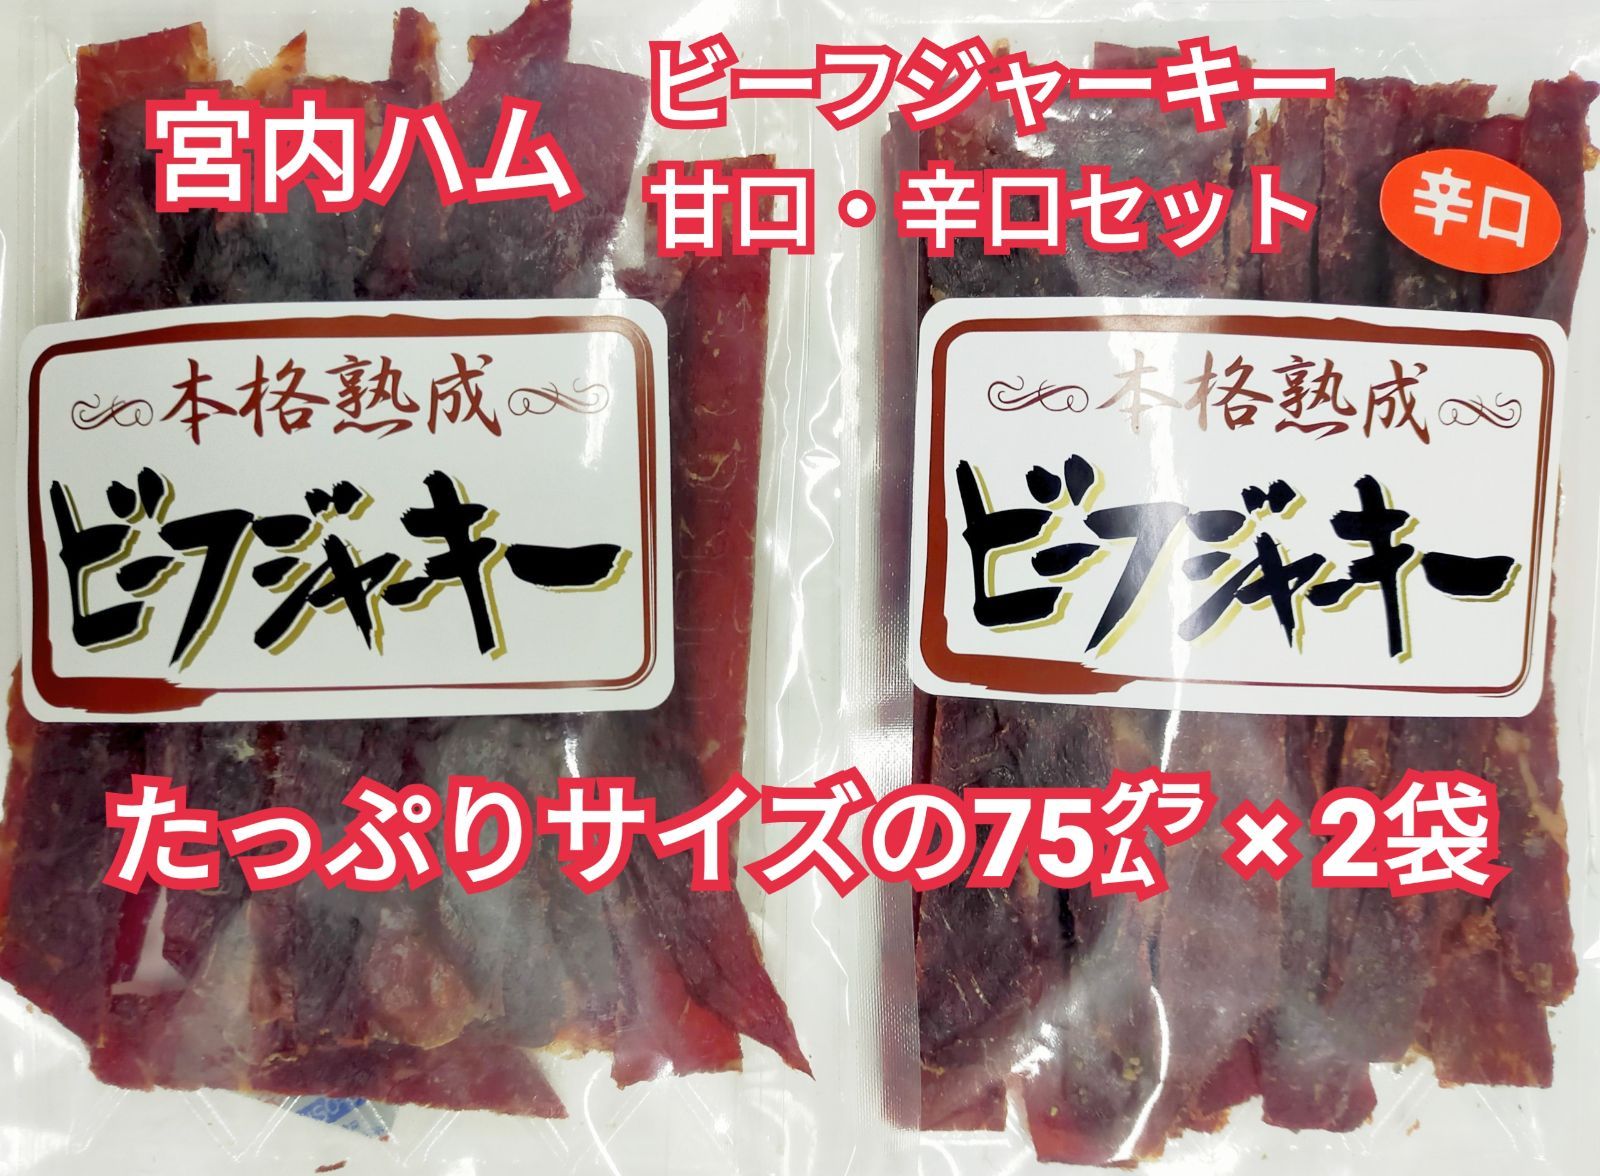 宮内ハム ビーフジャーキー 甘口 4袋 - 肉類(加工食品)